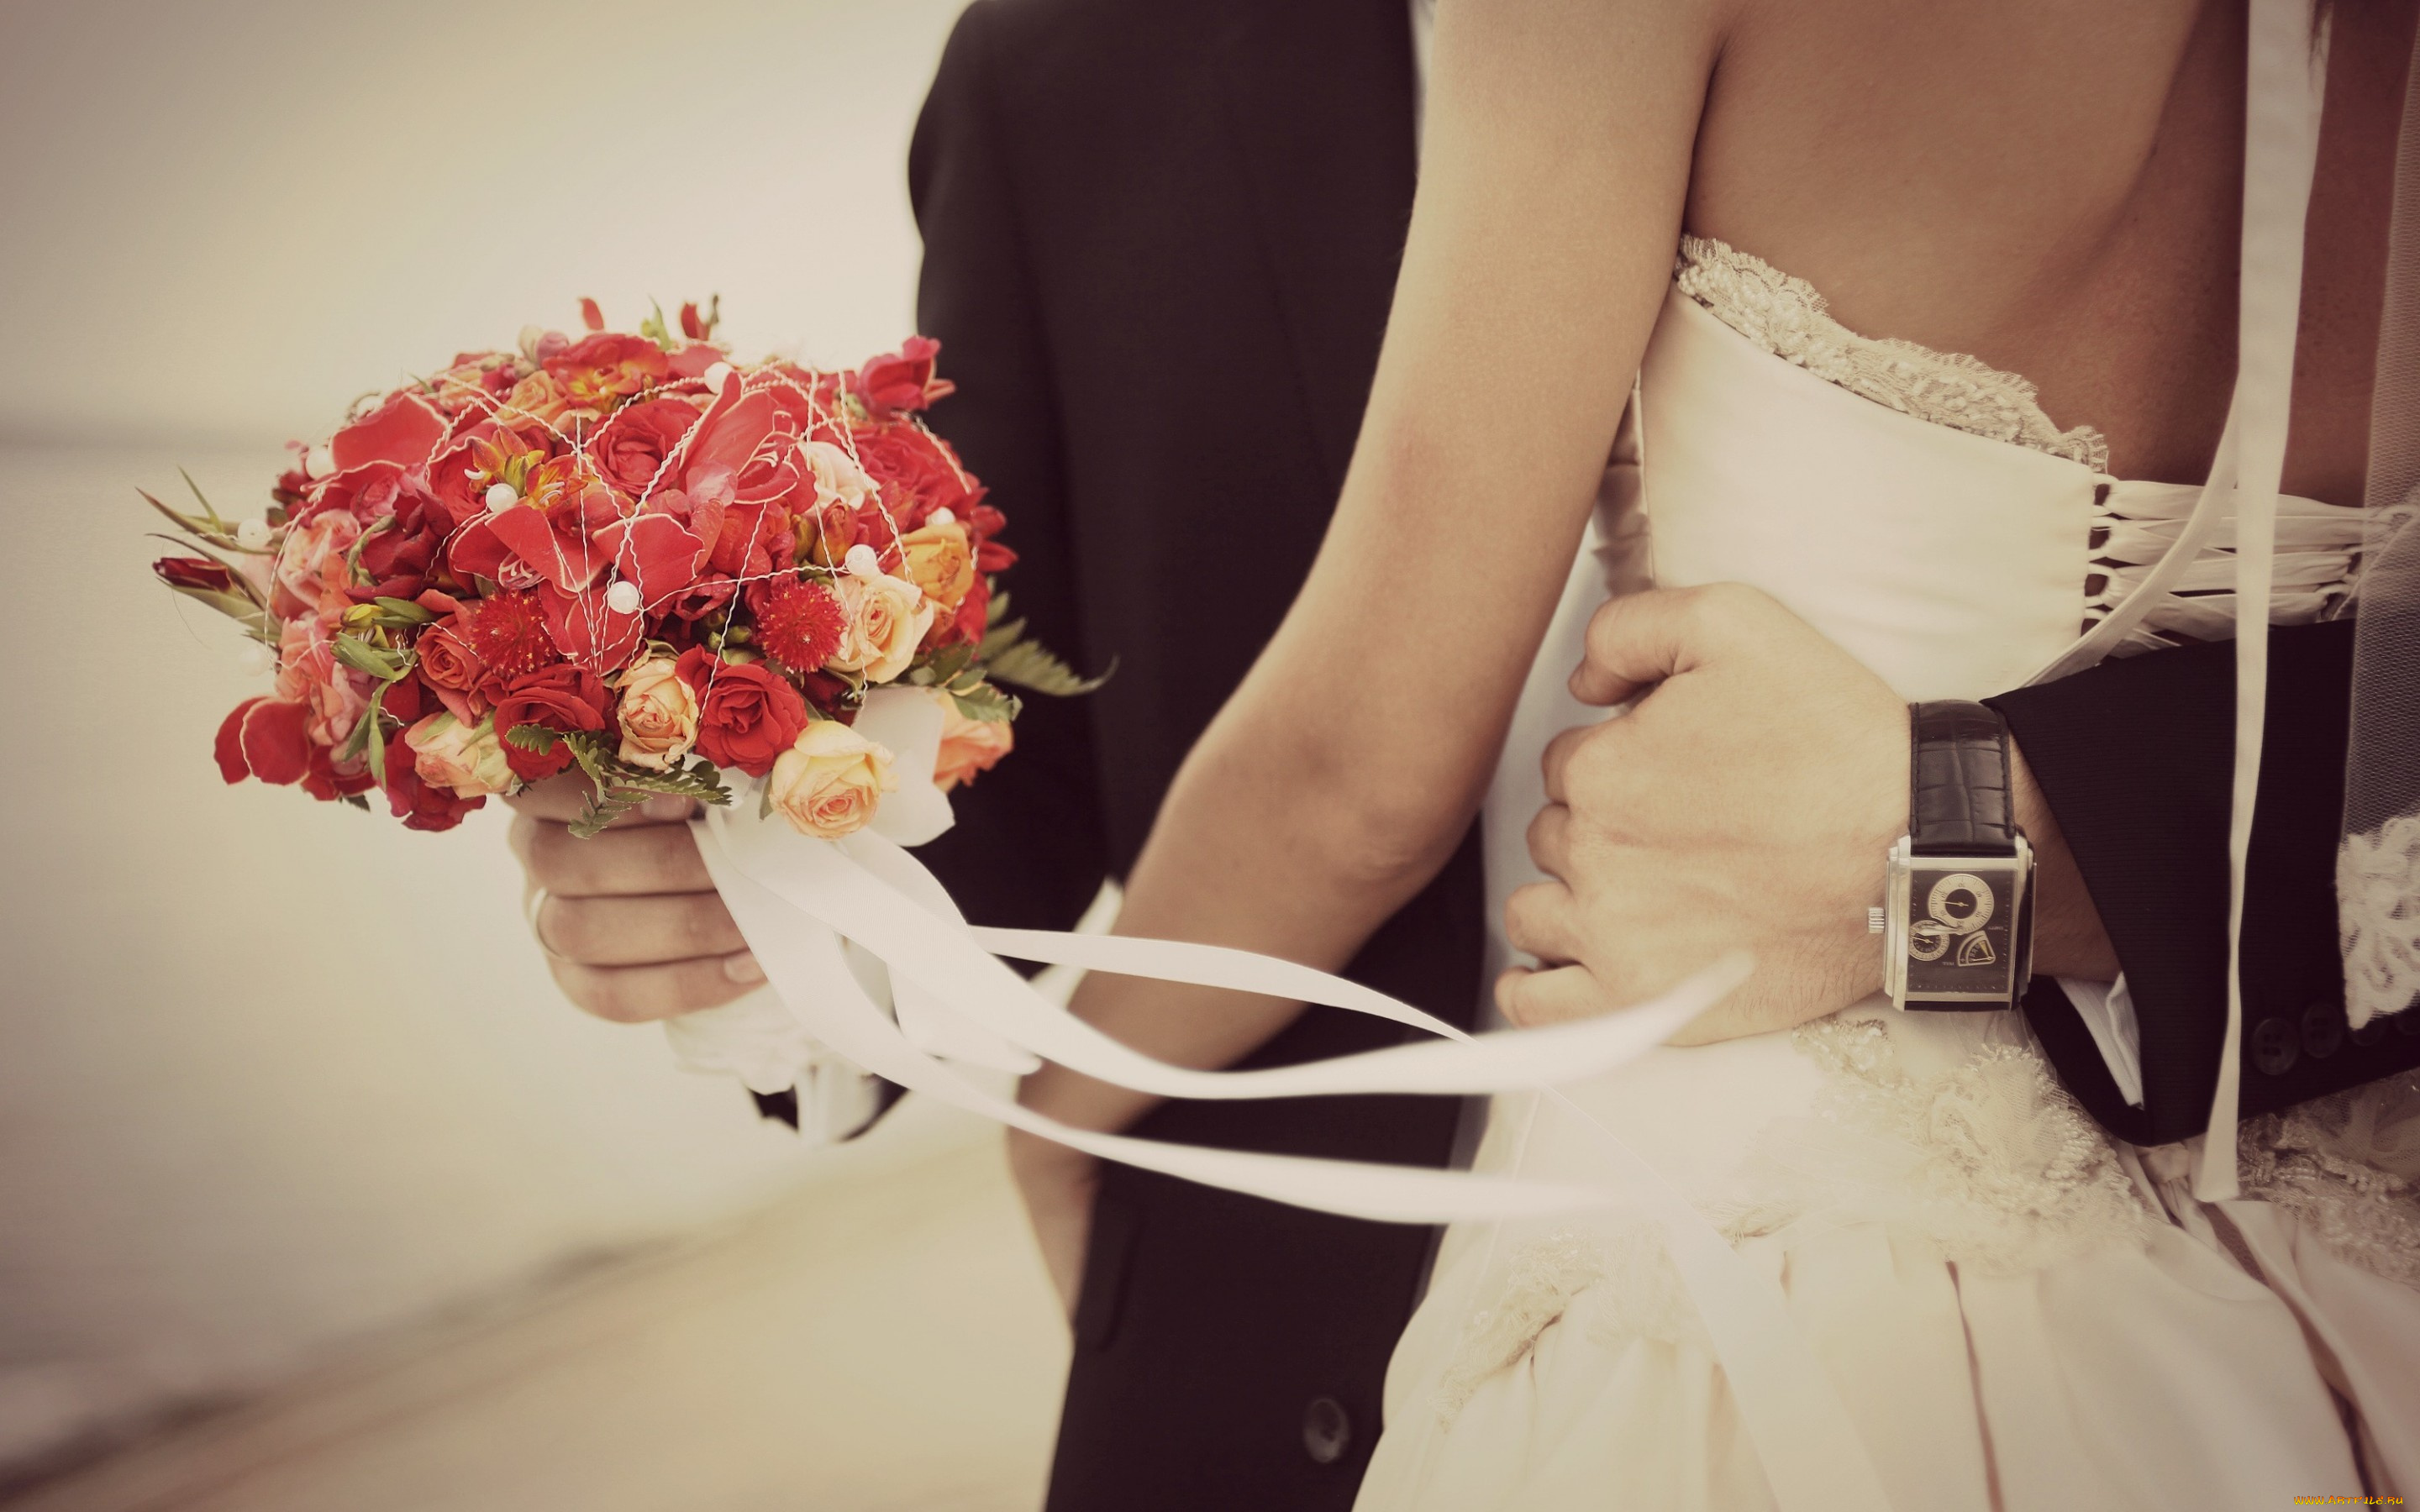 разное, мужчина, женщина, свадьба, свадебное, платье, мужчина, парень, женщина, девушка, любовь, чувства, часы, цветочки, цветы, праздник